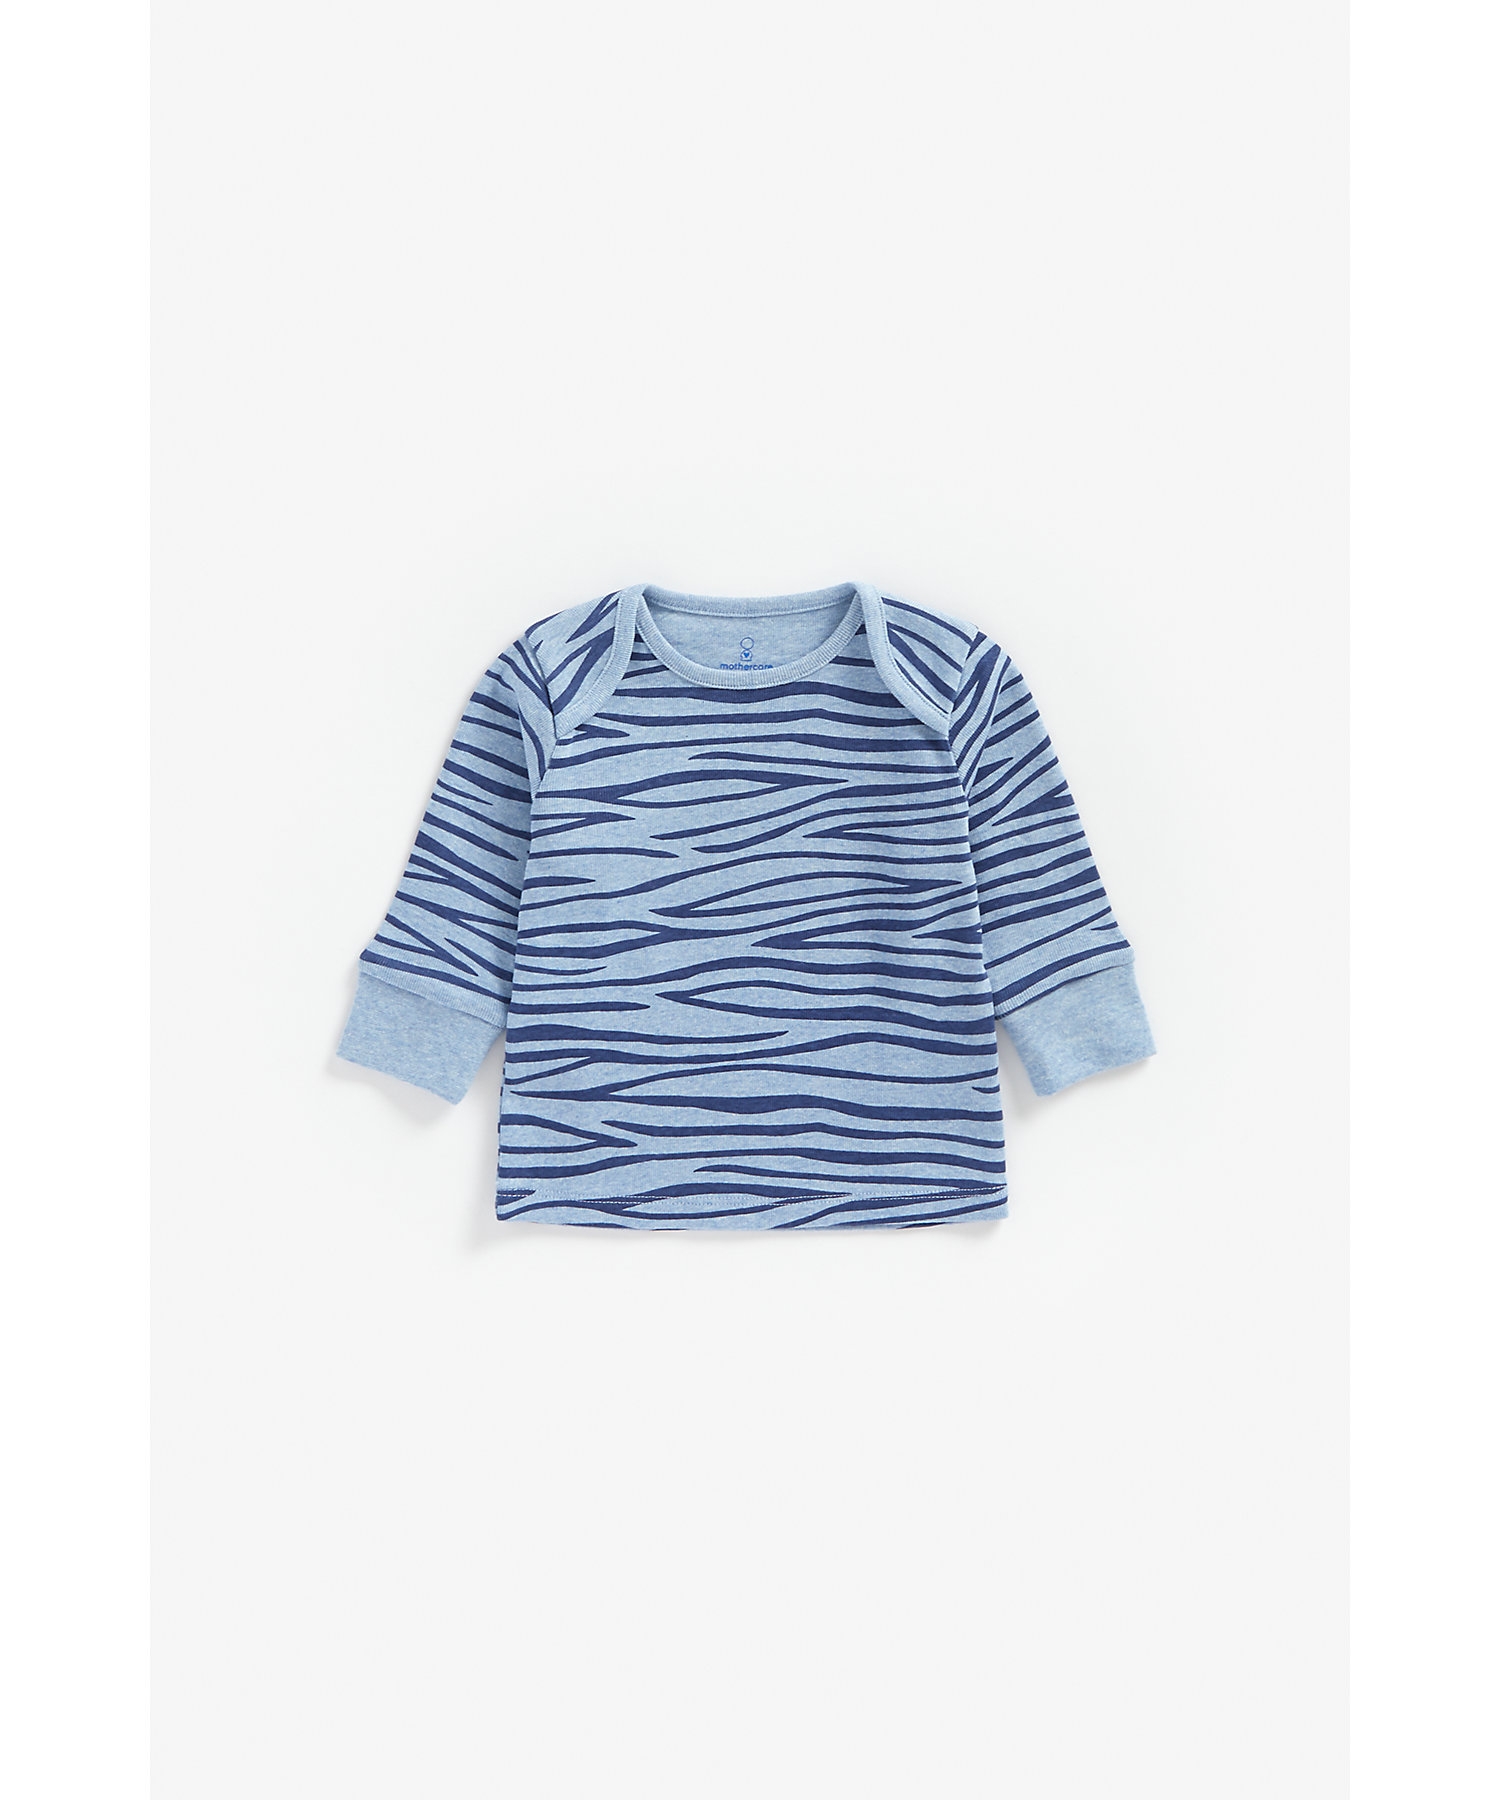 Boys Full Sleeves Pyjama Set Animal Print - Pack Of 2 - Blue